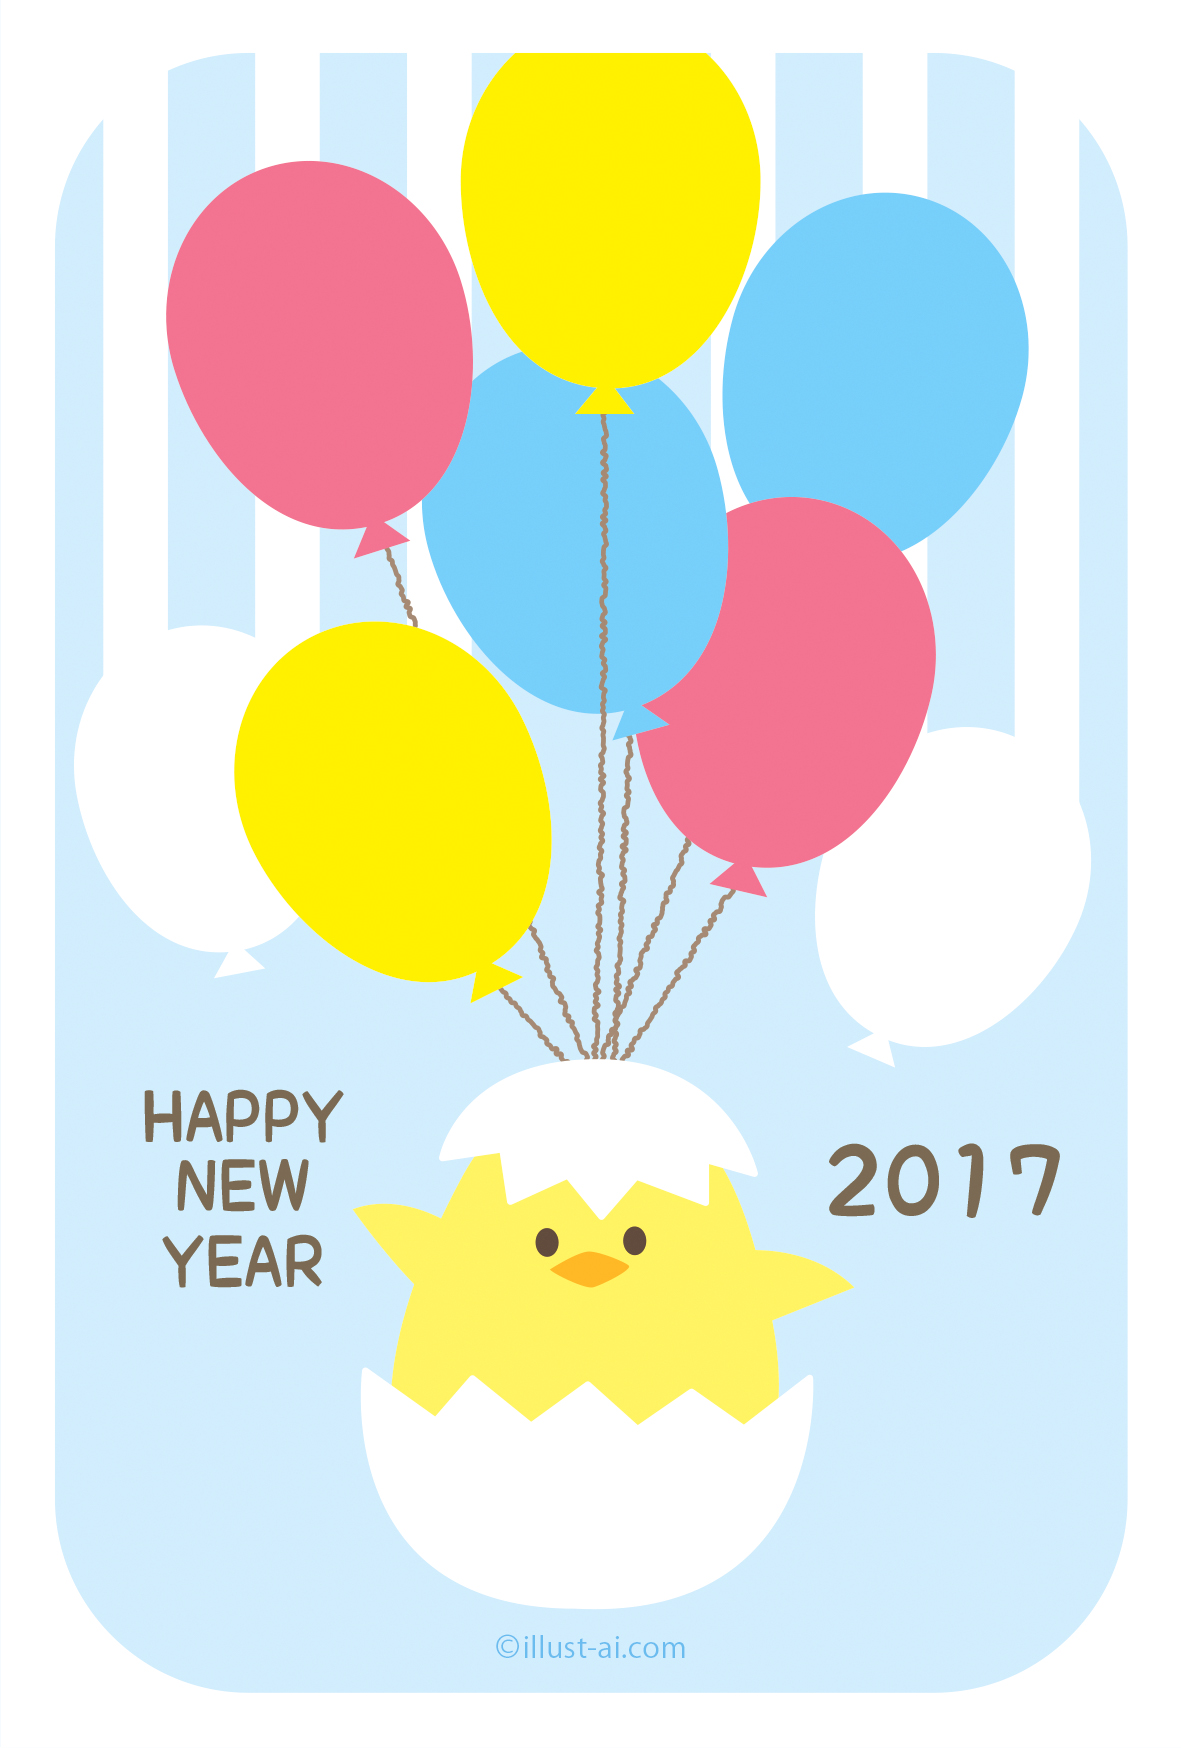 年賀状 亥年 可愛いヒヨコが風船で空を飛んでいるイラスト 年賀状17無料イラスト素材集